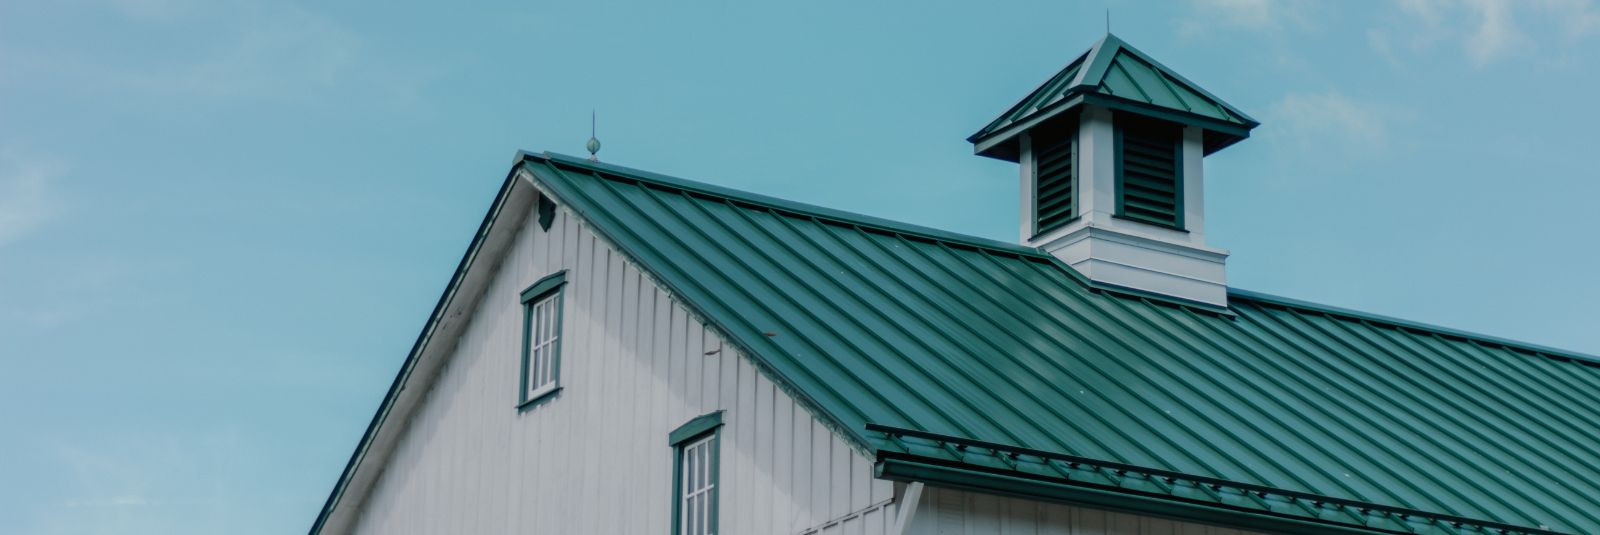 Plekk-katused on viimastel aastakümnetel muutunud üha populaarsemaks valikuks nii eramute kui ka ärihoonete katusekatte lahendustes. Nende tõhusus ja vastupidav